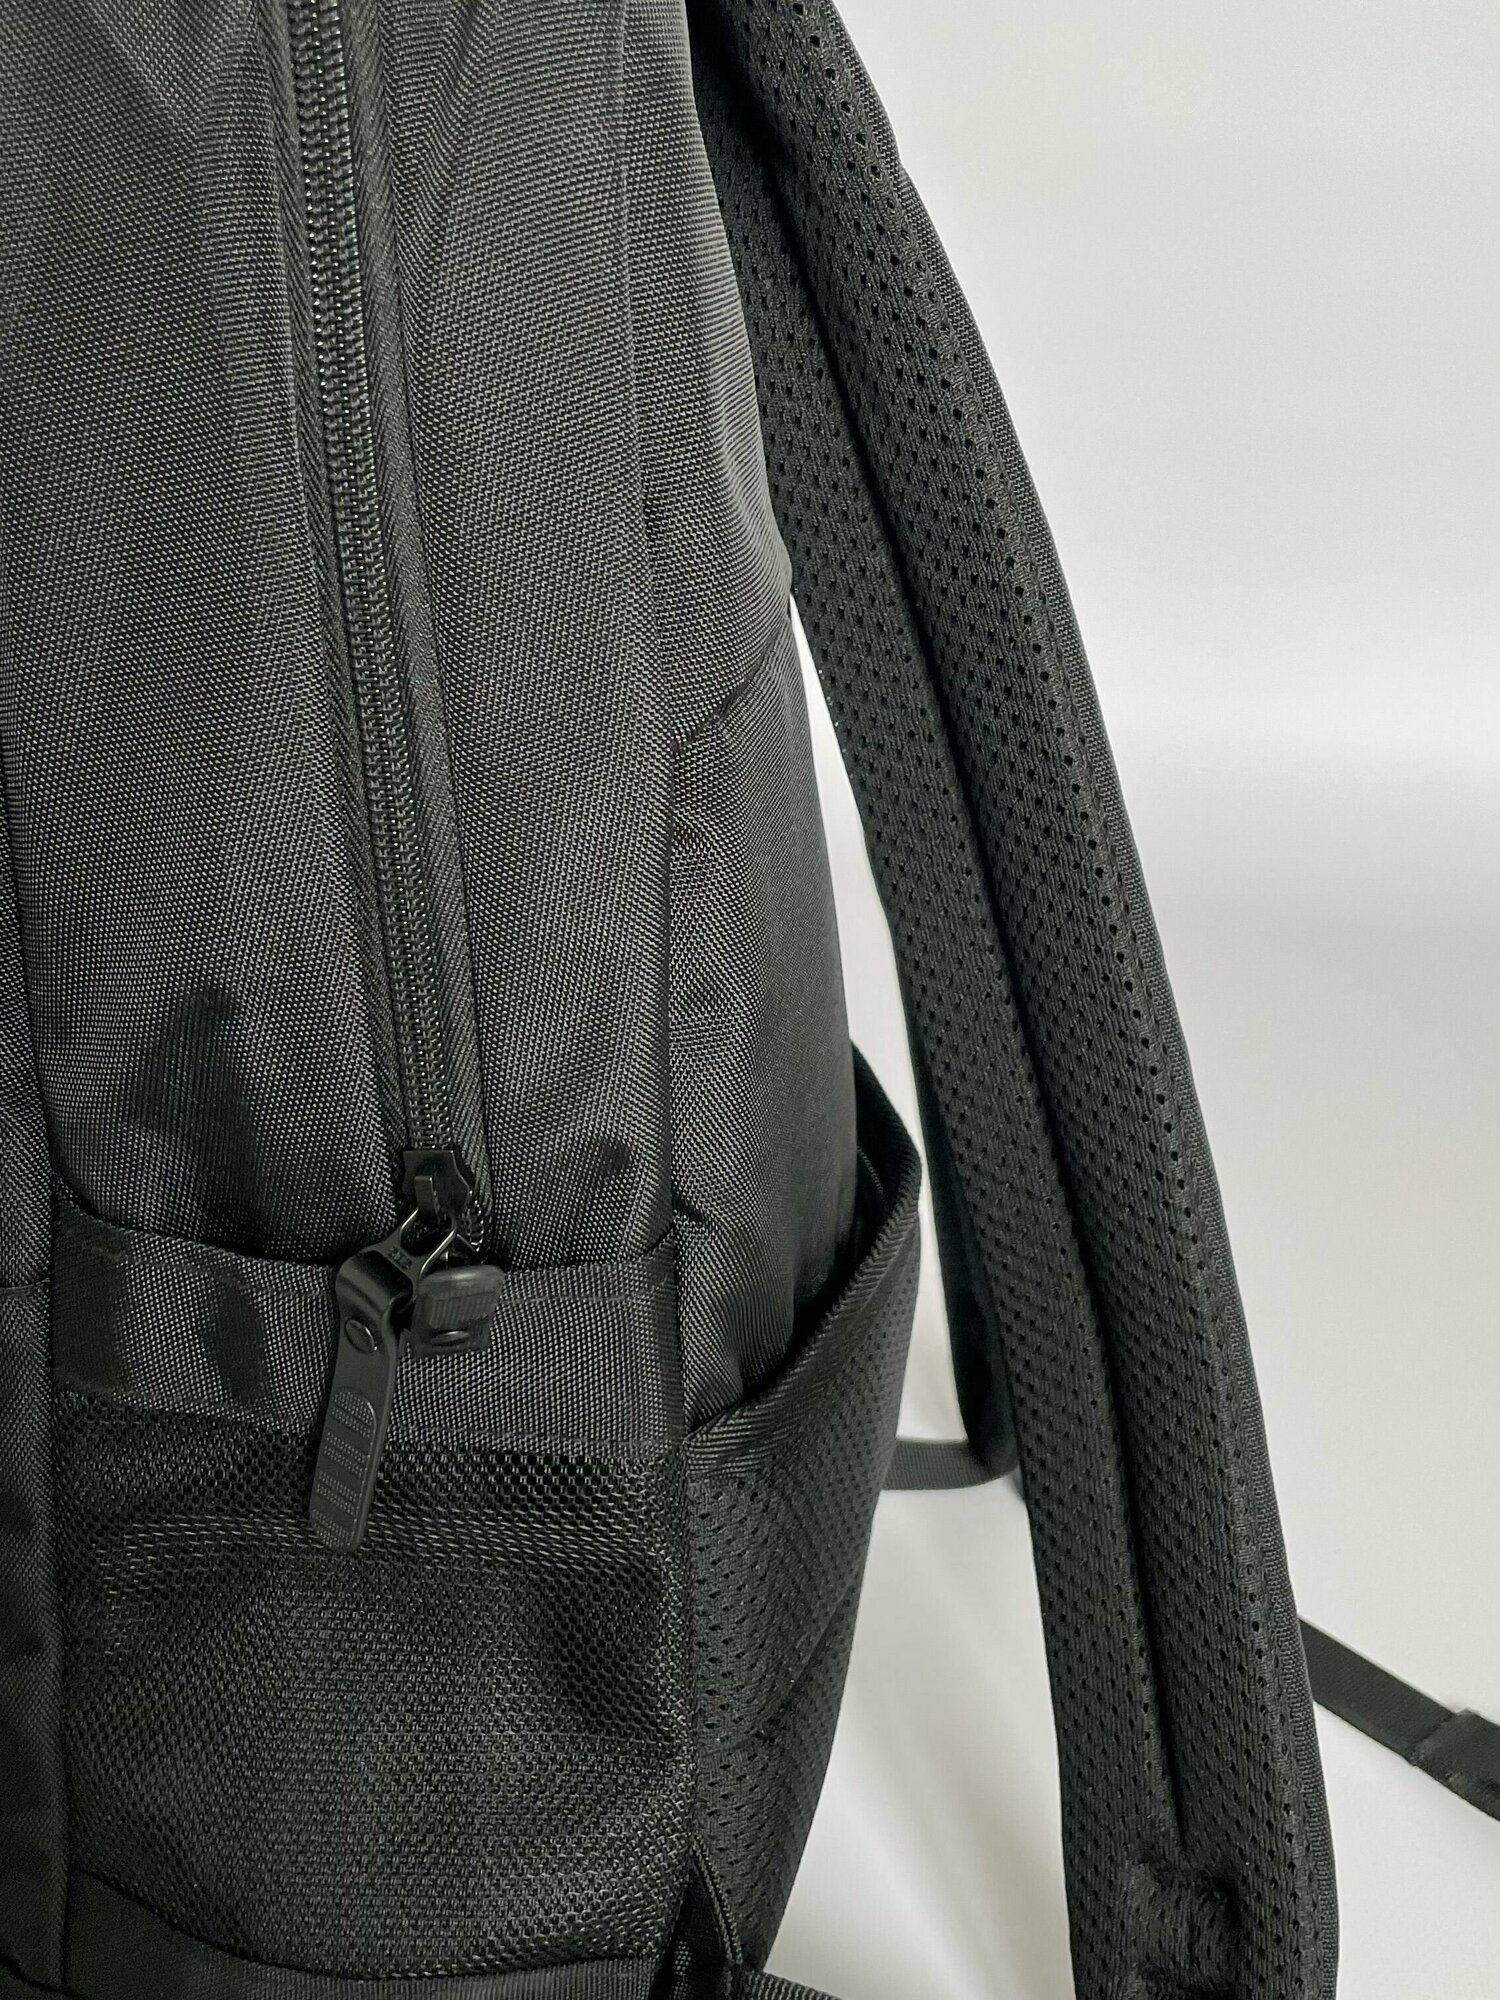 Рюкзак черный (городской, повседневный, универсальный, школьный, подростковый)